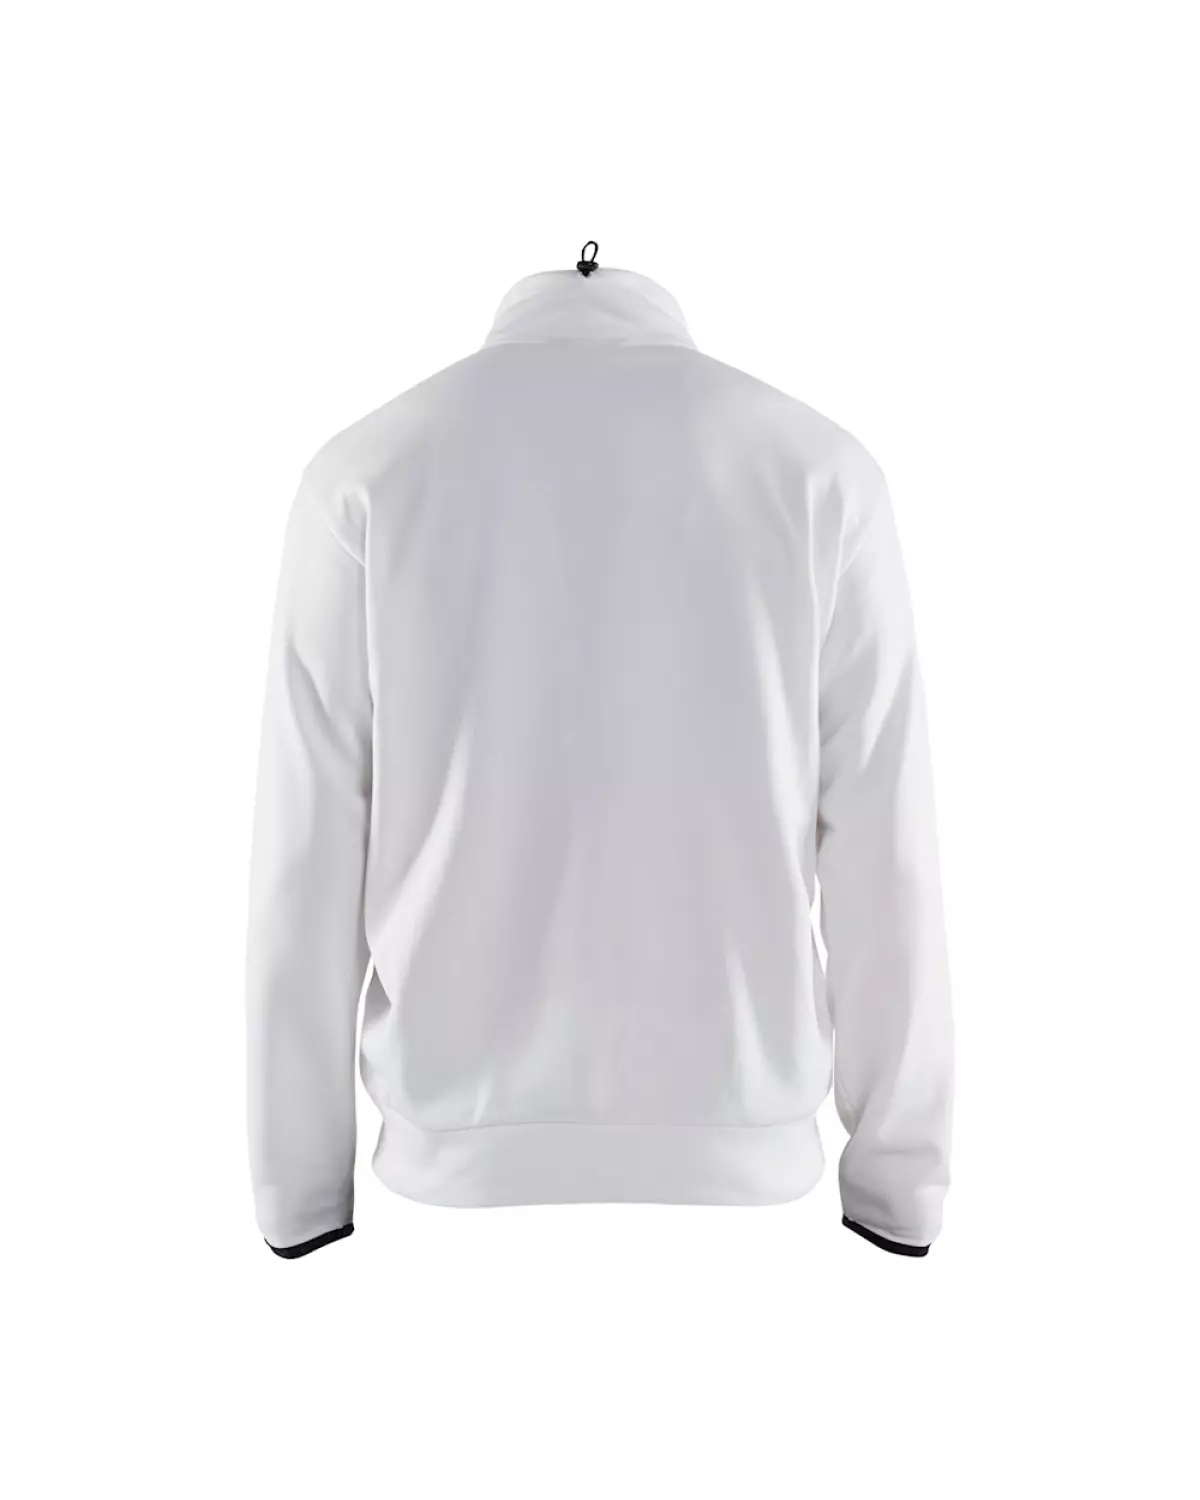 Blåkläder 336225261098S Service sweatshirt met rits - Wit/Donkergrijs - S